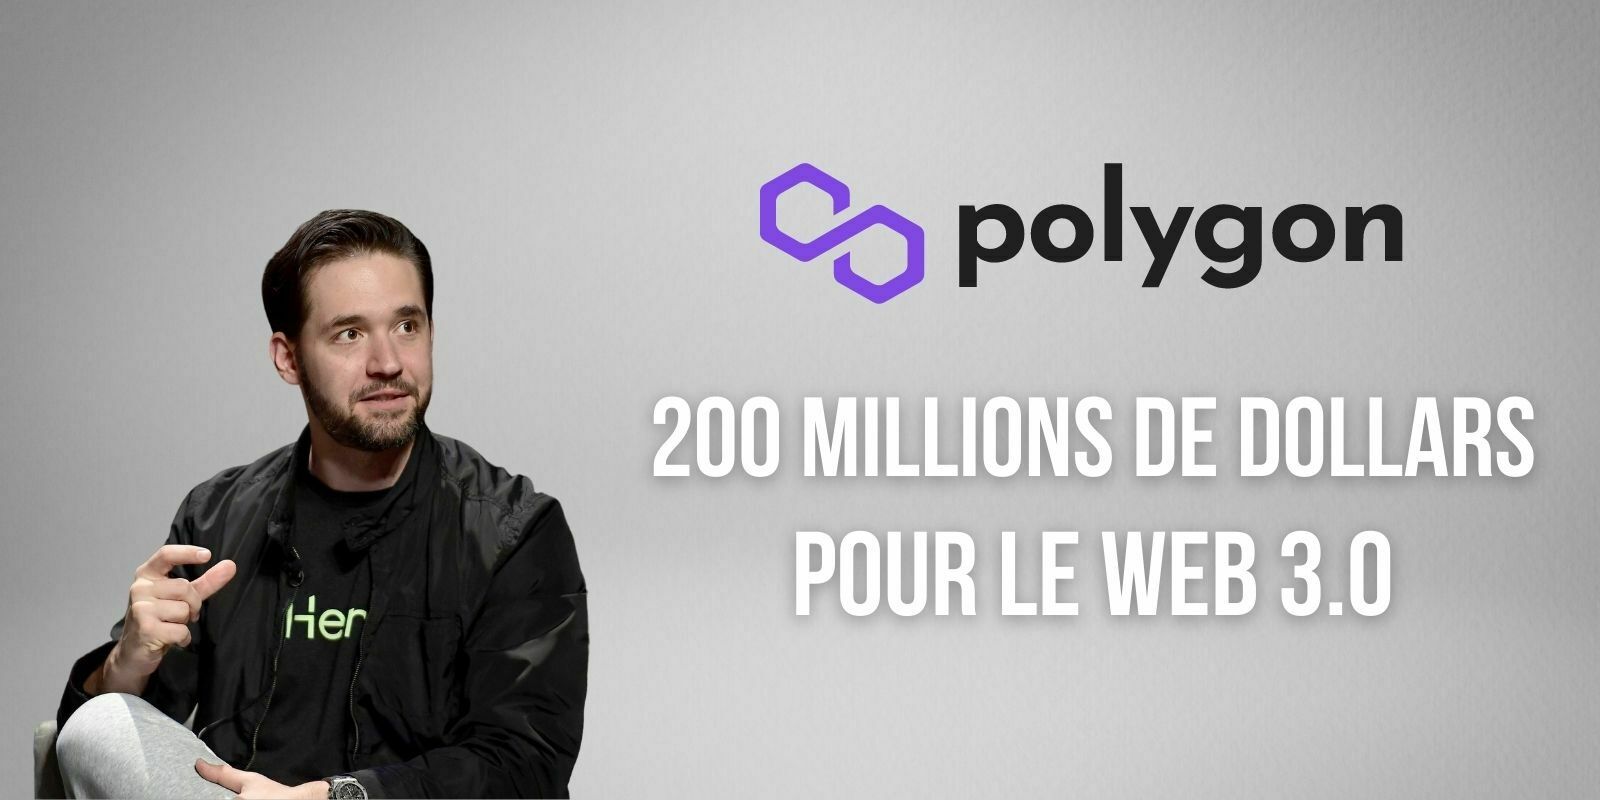 Polygon et le cofondateur de Reddit allouent 200 millions de dollars pour le Web 3.0